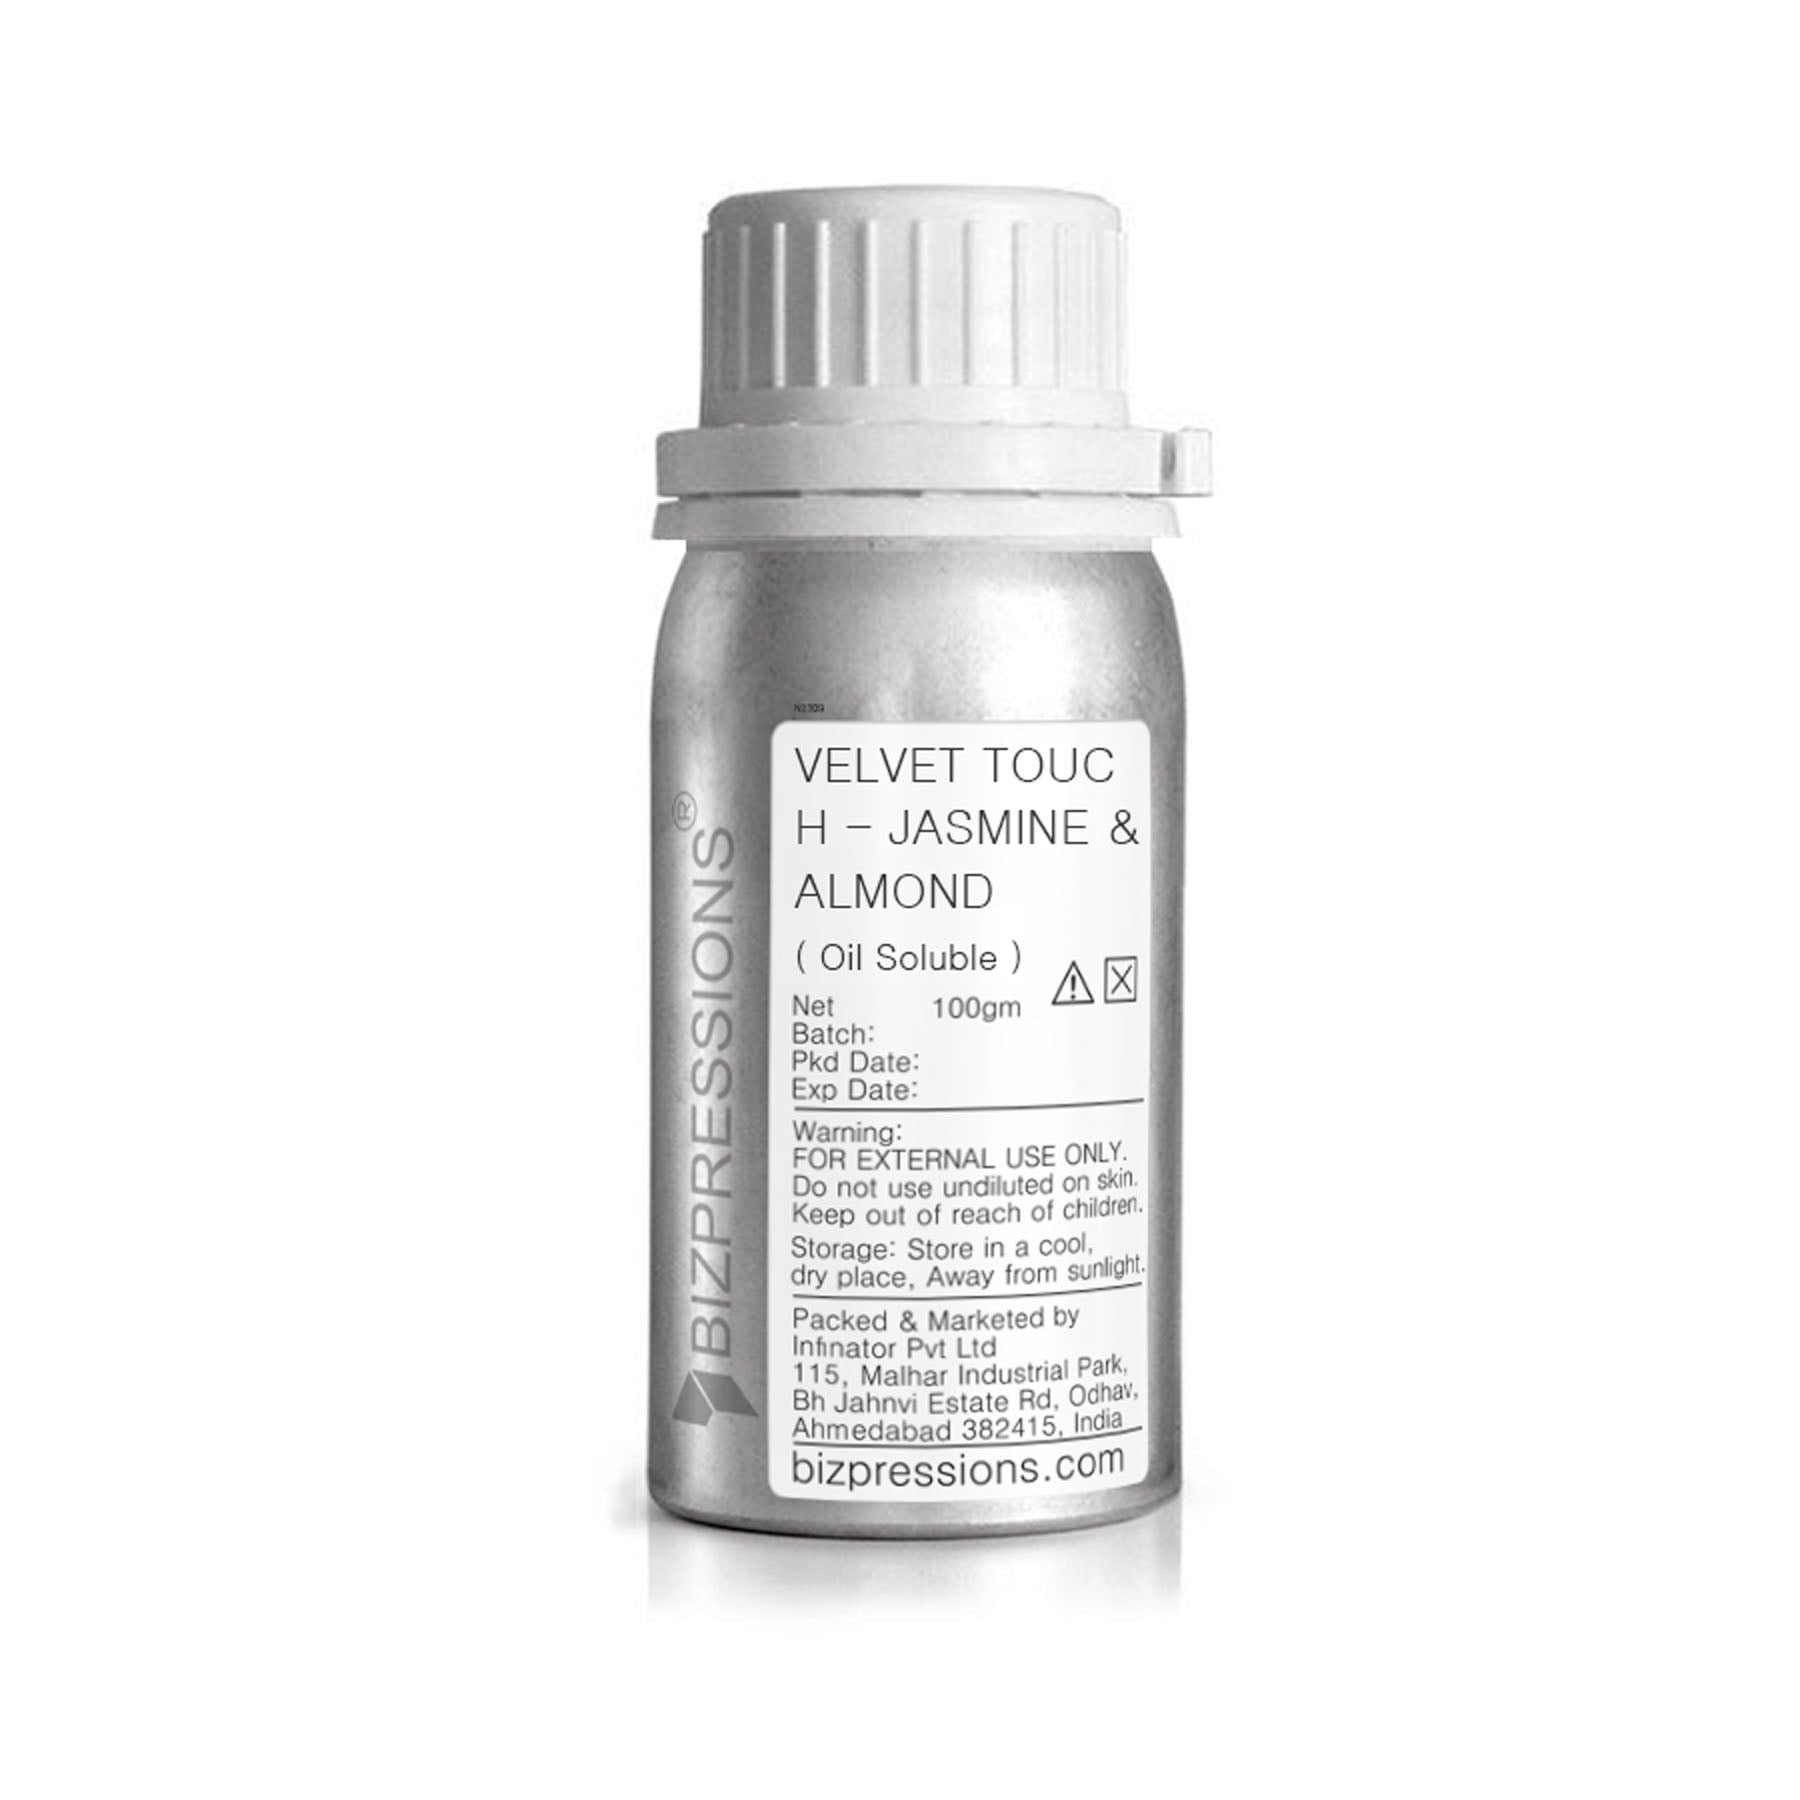 VELVET TOUCH - JASMINE & ALMOND - Fragrance ( Oil Soluble ) - 100 gm